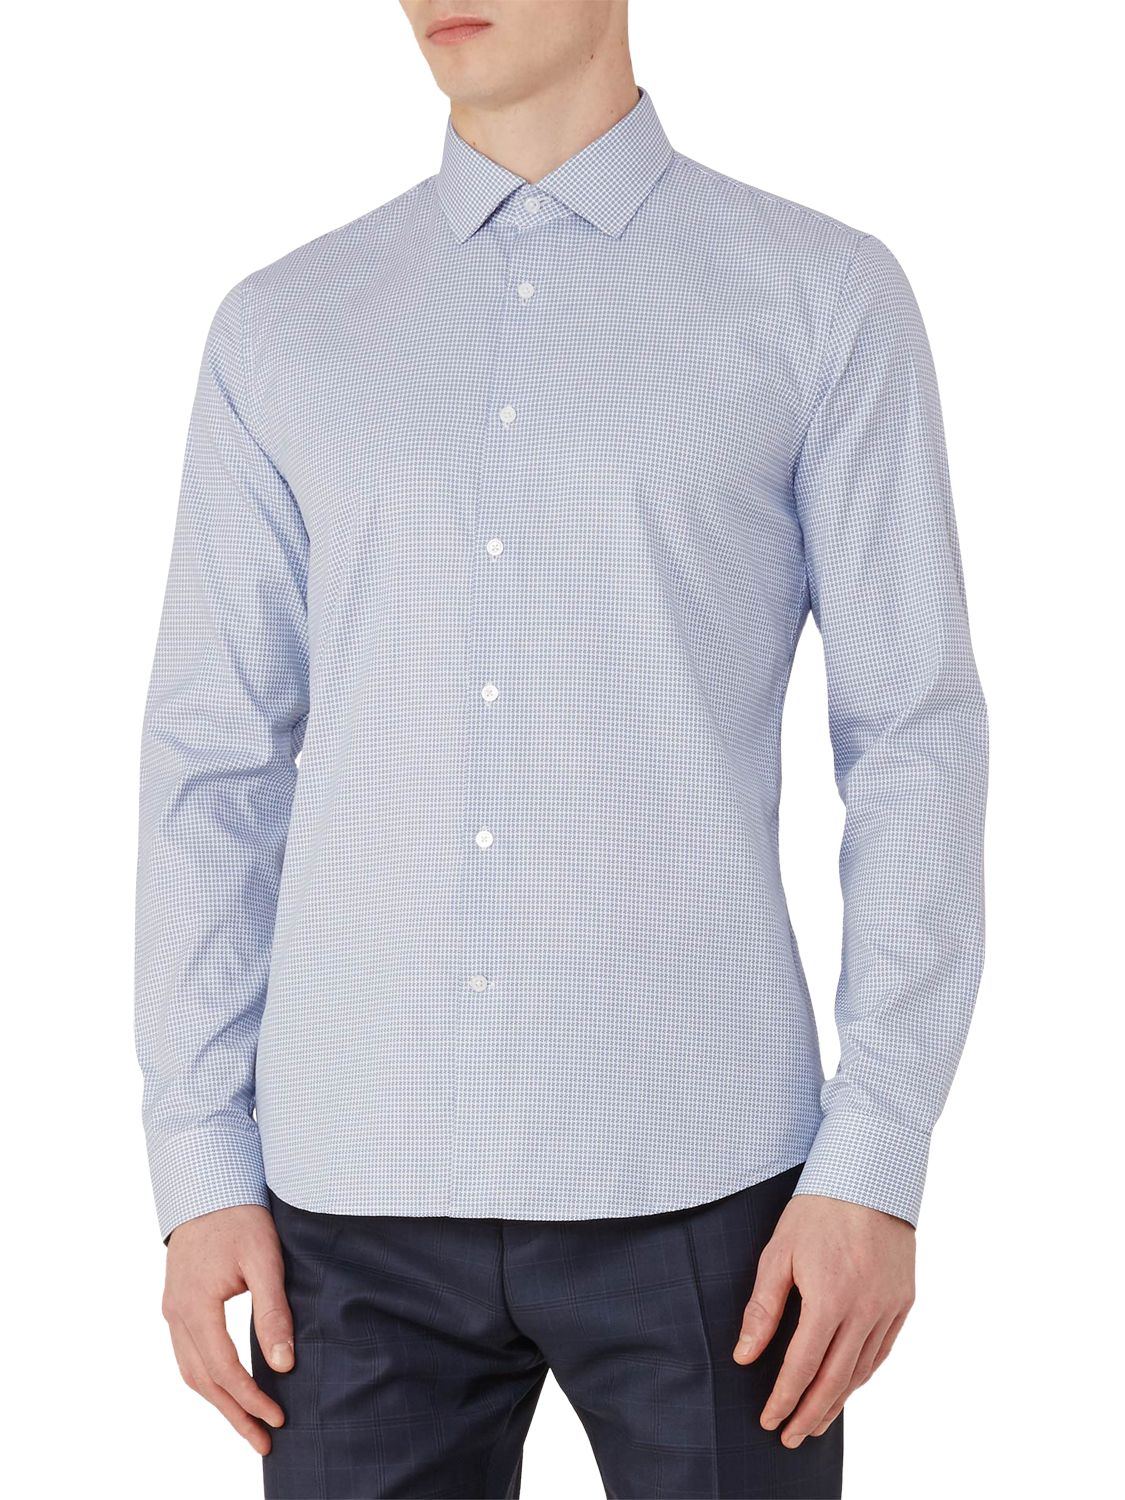 Reiss Mattusi Houndstooth Cotton Slim Fit Shirt, Soft Blue, L